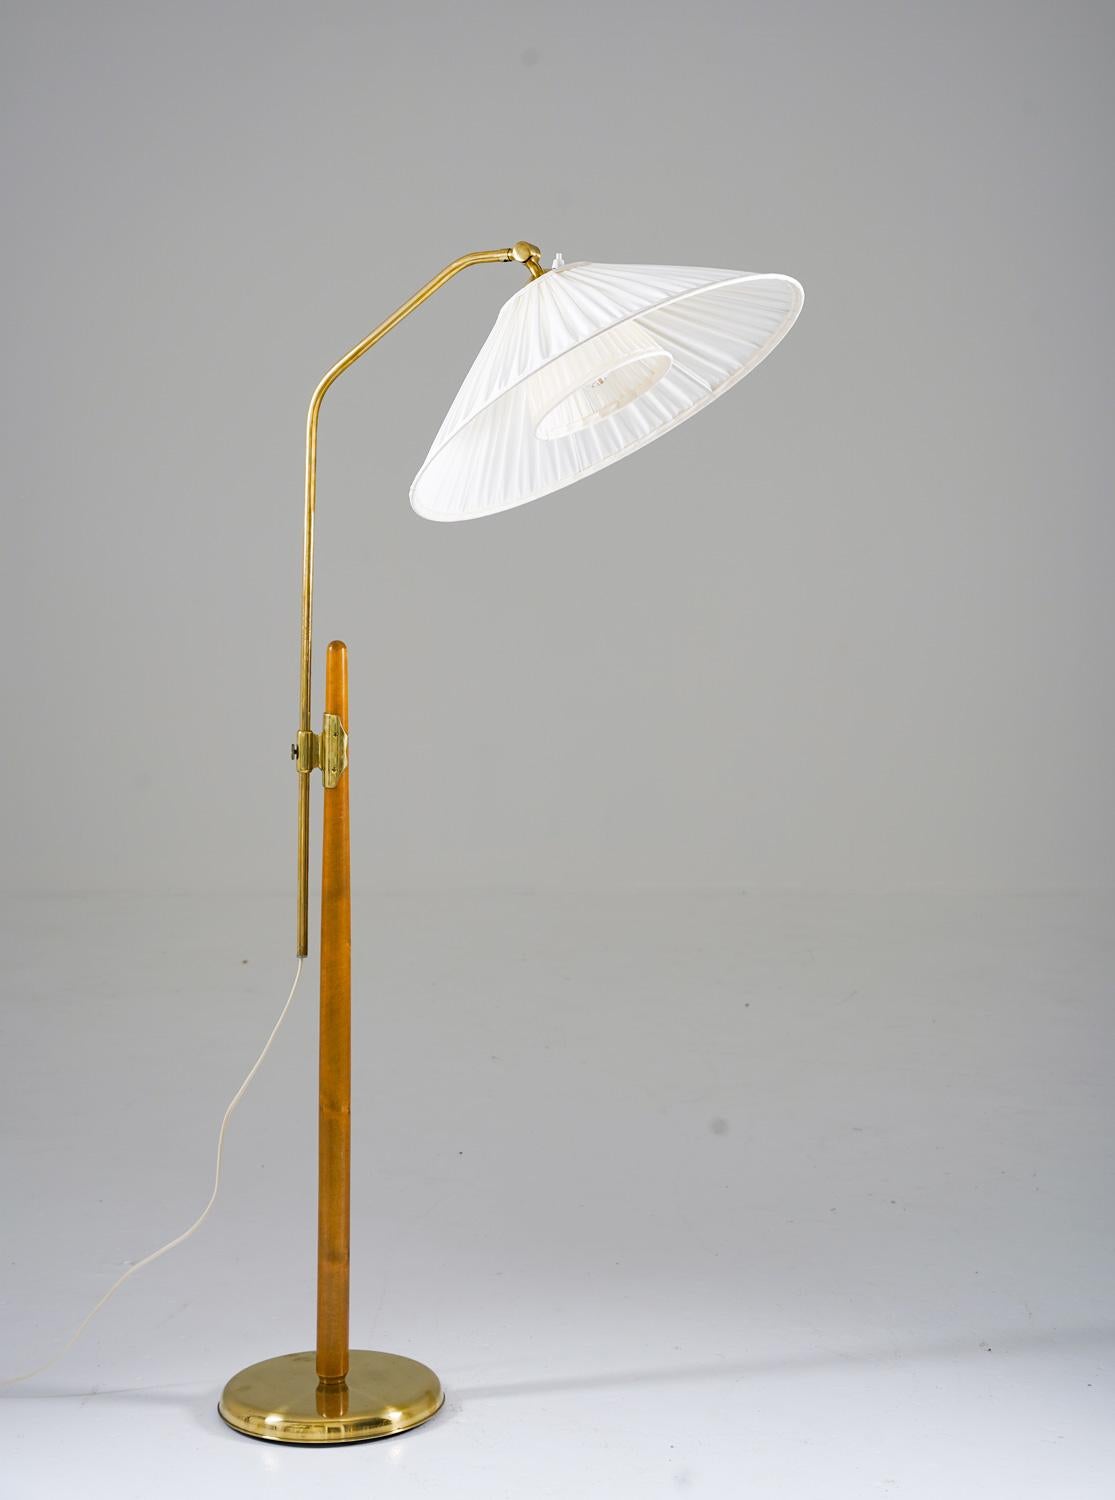 Hübsche Stehlampe von Liberty, 1940er Jahre. 
Die Lampe besteht aus einer Holzstange, die einen höhenverstellbaren Messingstab trägt. 

Die maximale Höhe beträgt 160 cm (55